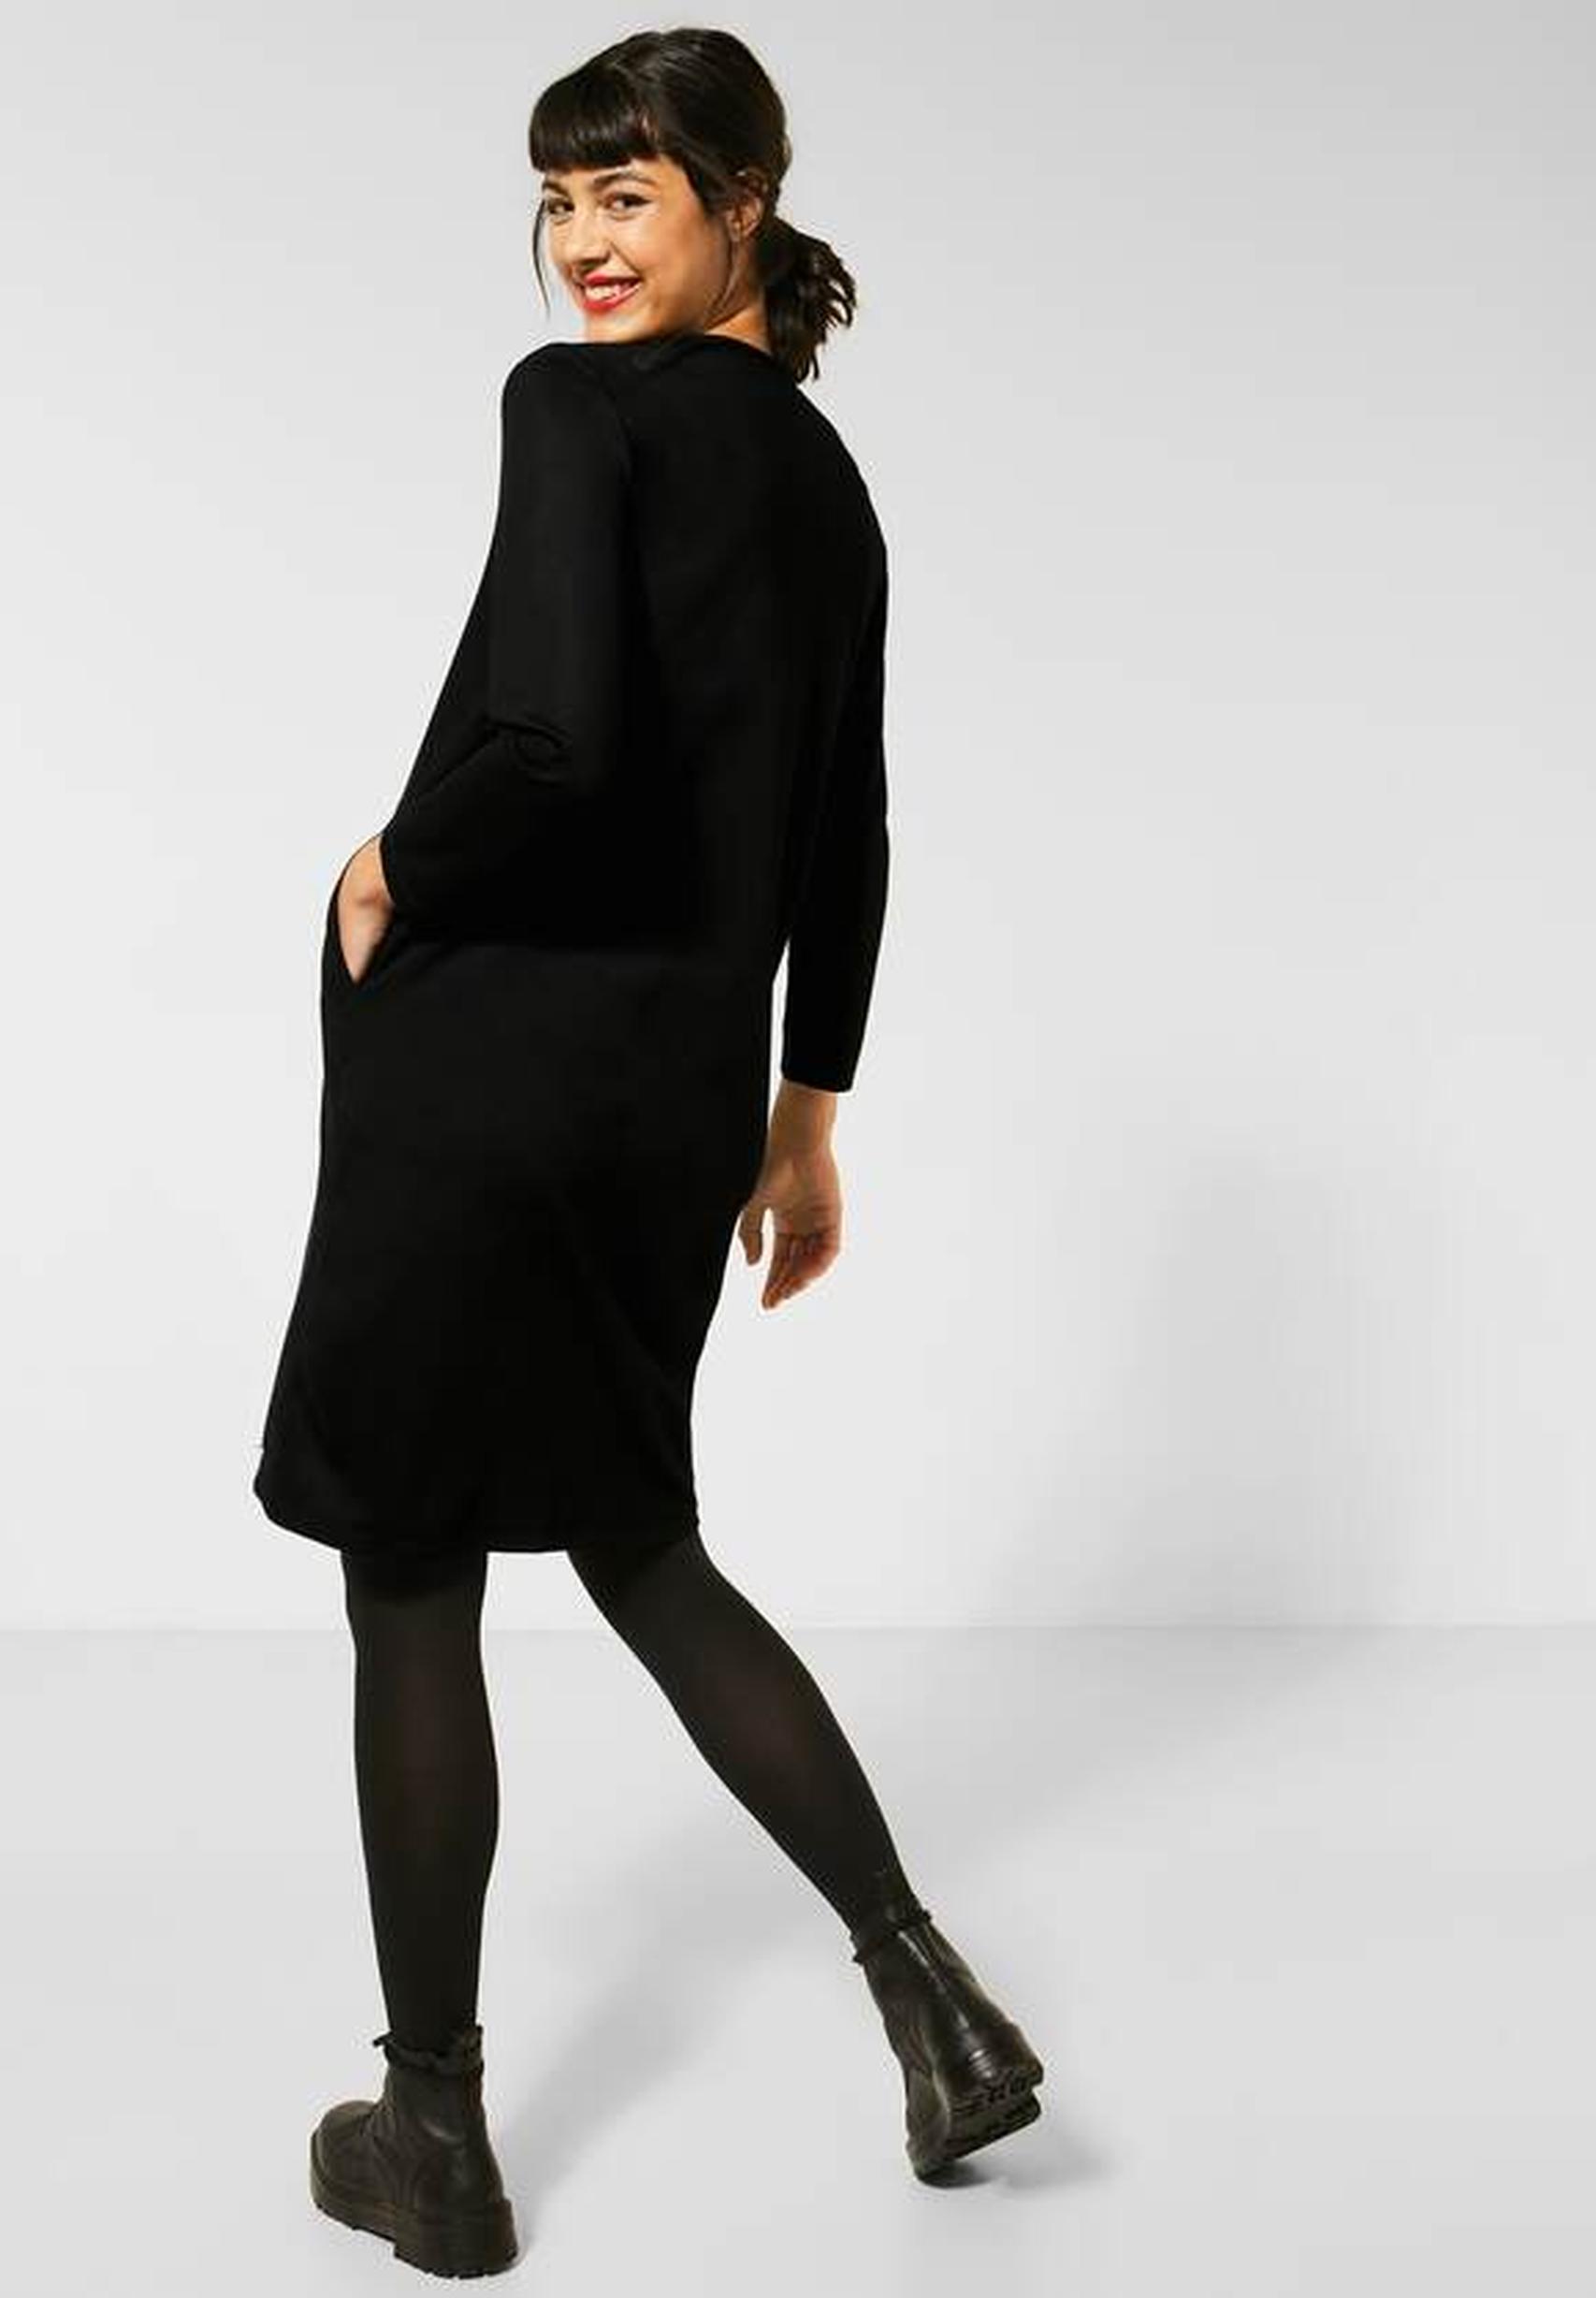 Modisches Kleid aus der Kollektion von Street One in schwarz 142780